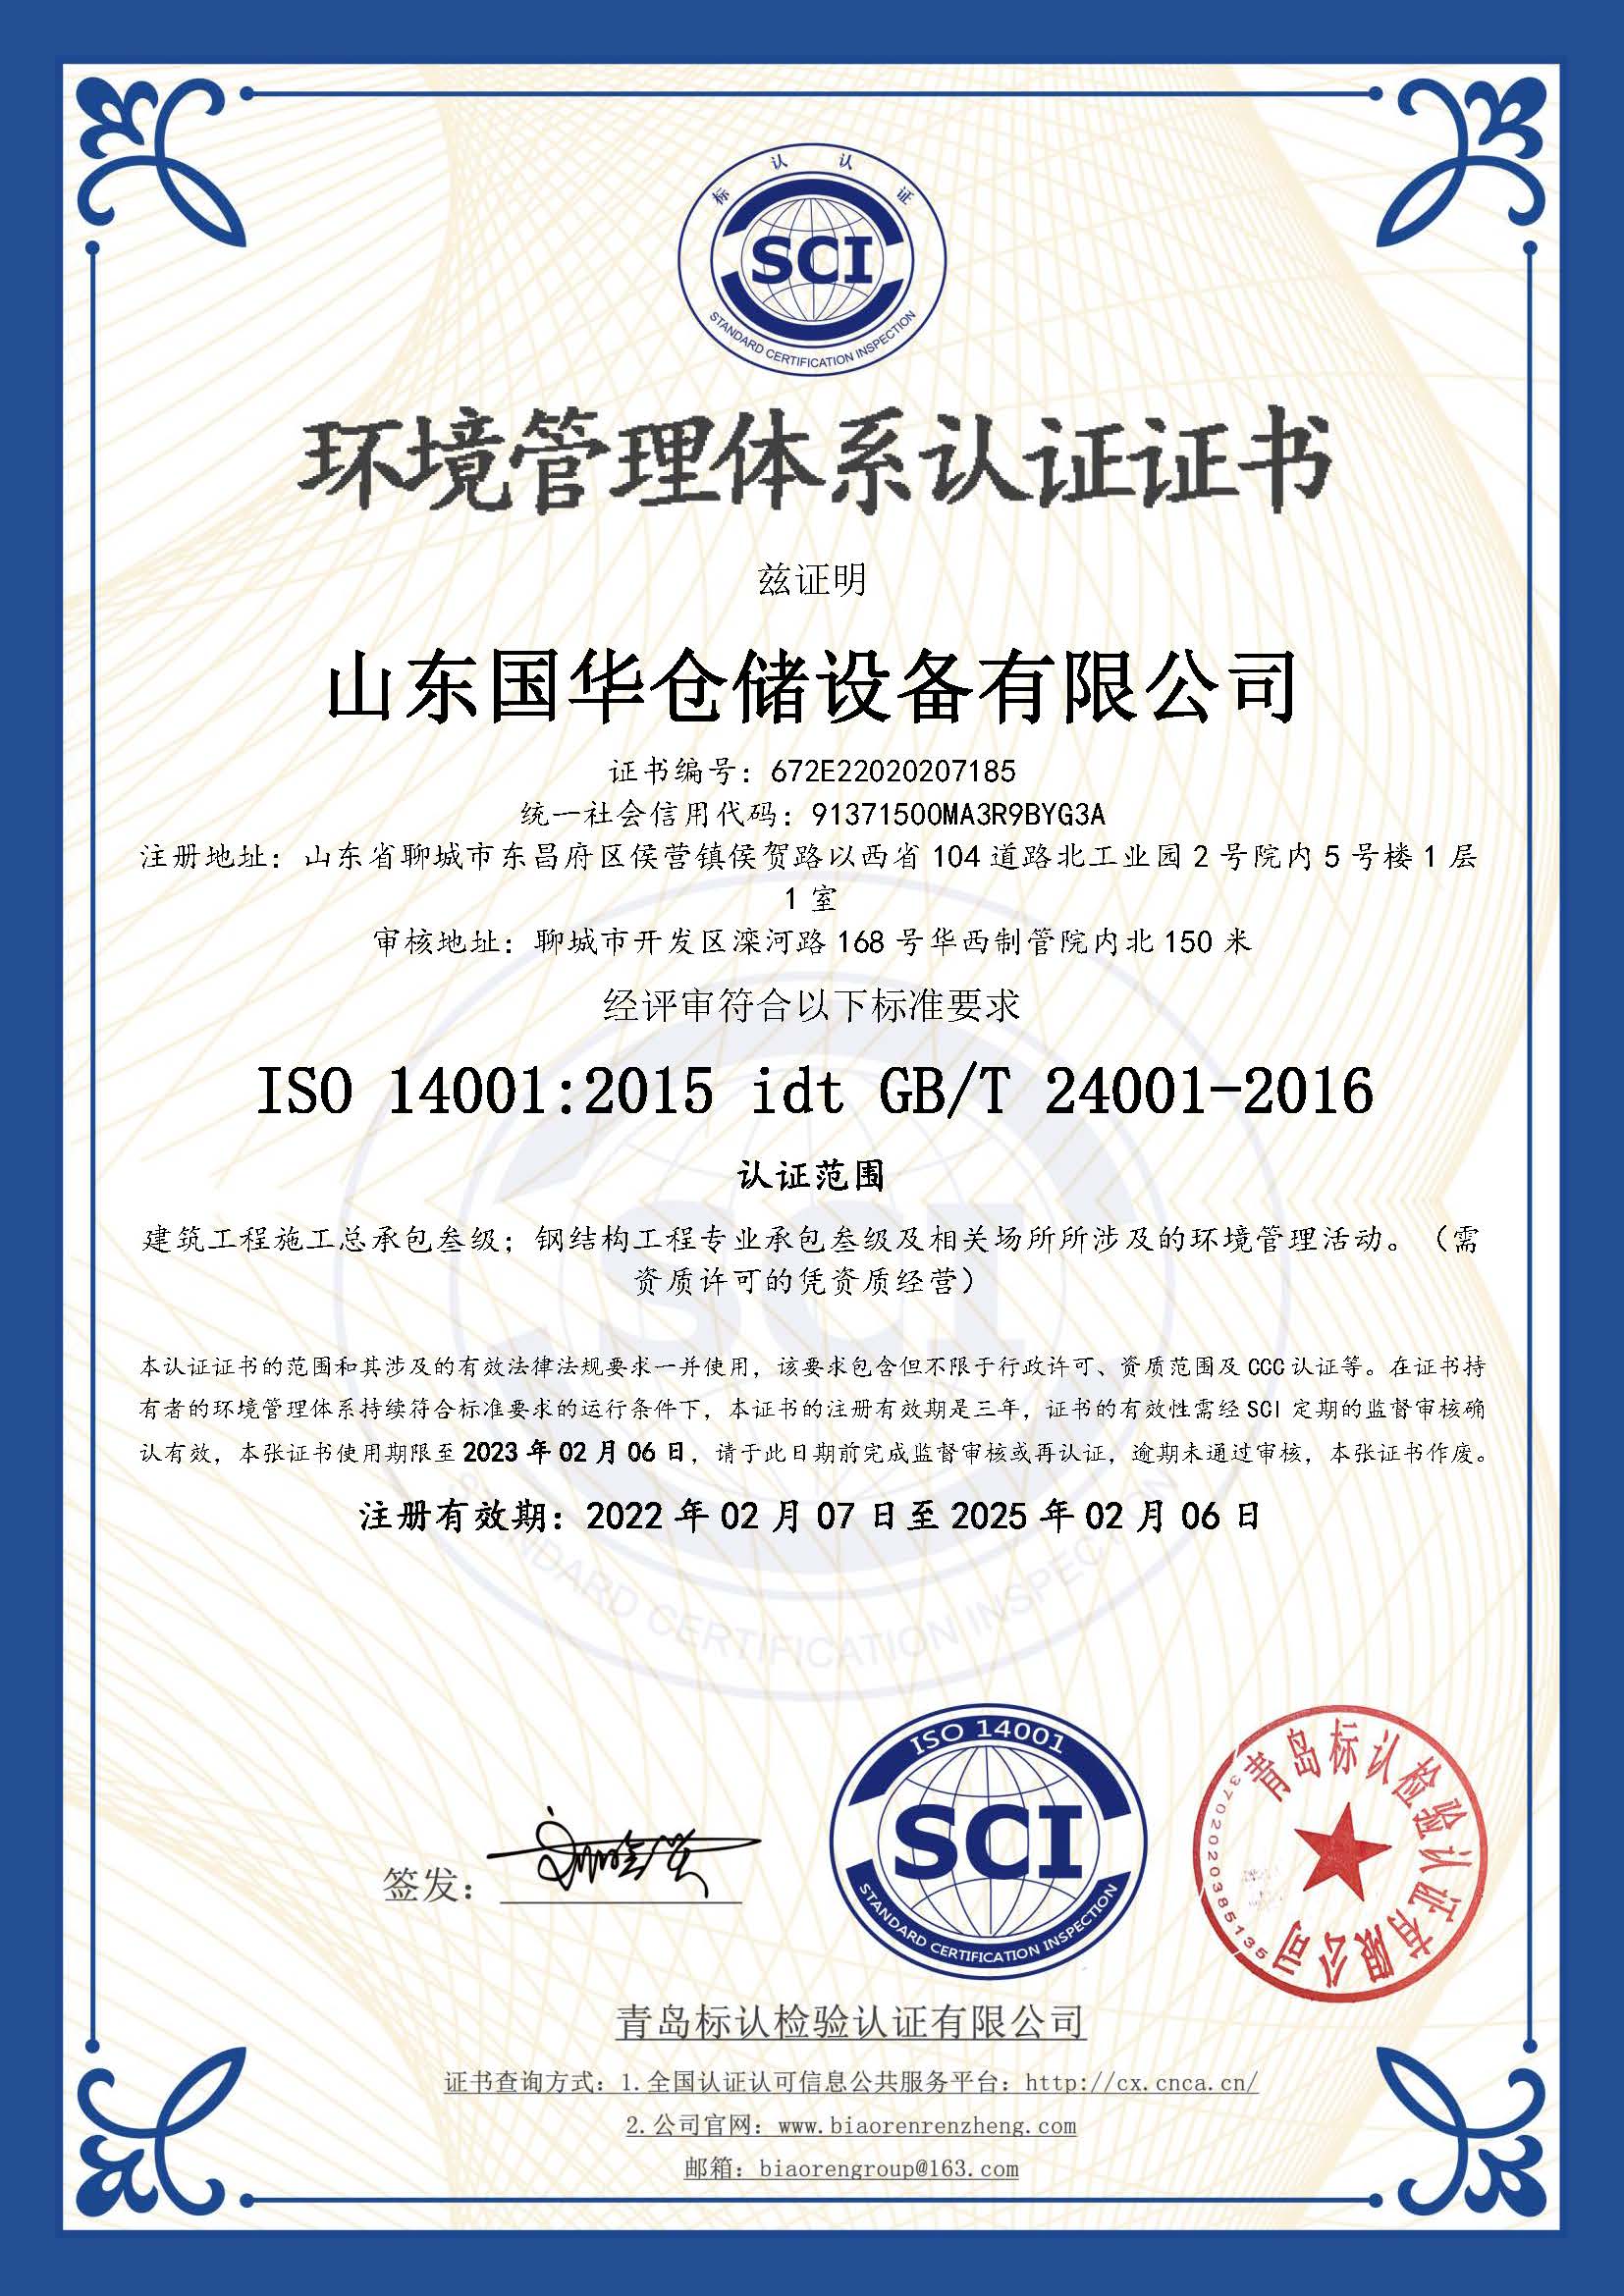 克孜勒苏柯尔克孜钢板仓环境管理体系认证证书